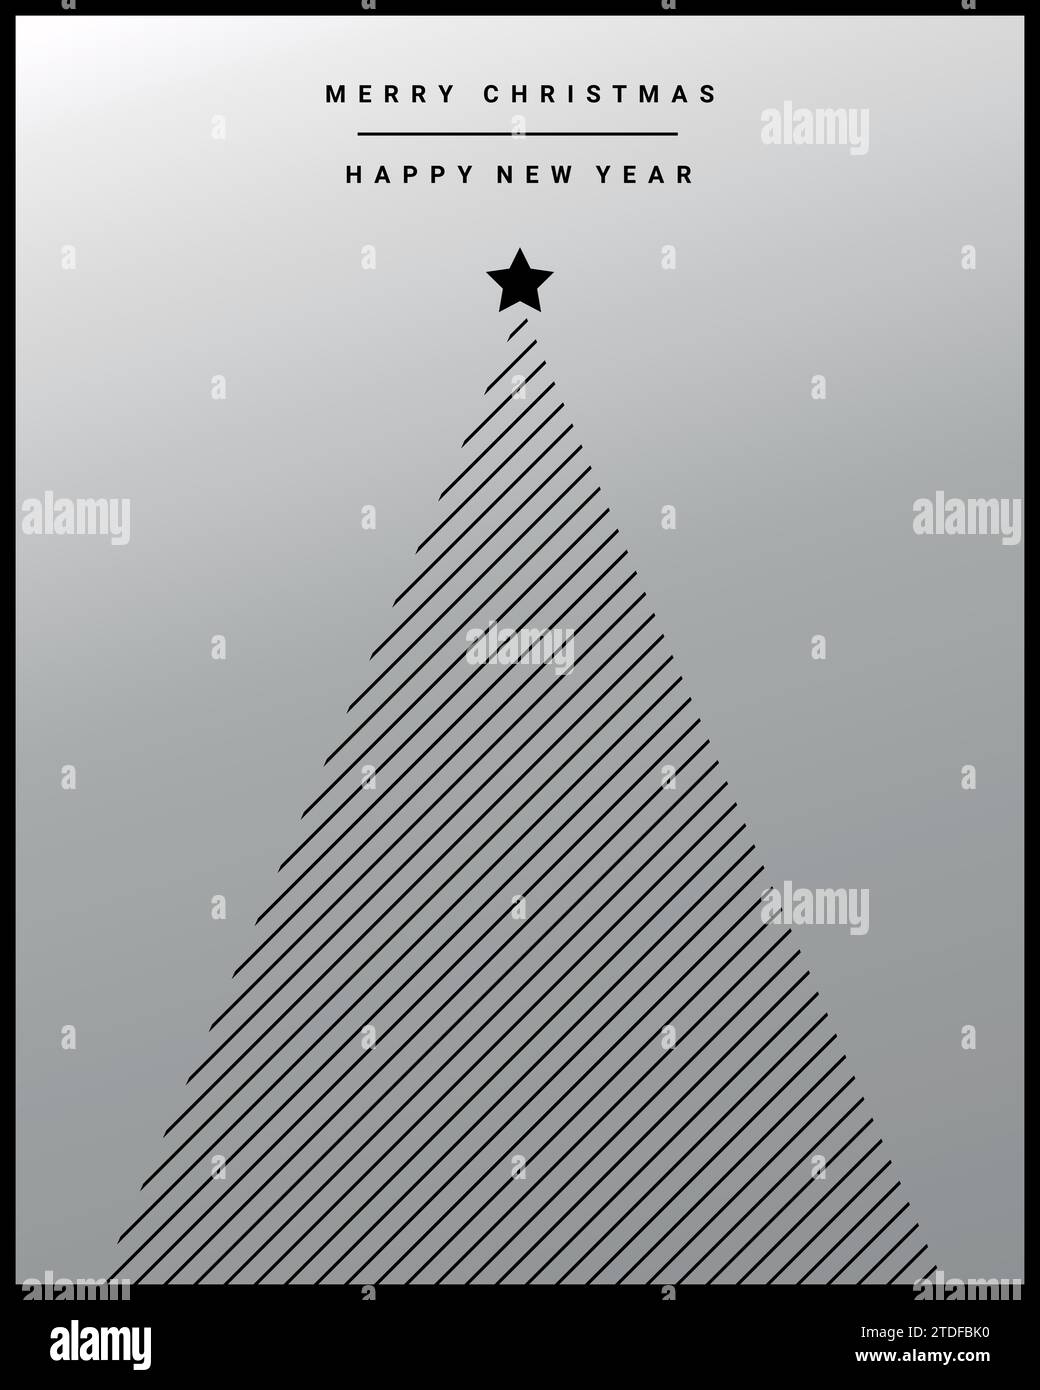 Carte de voeux de Noël et nouvel an avec arbre de Noël de forme géométrique. Design minimal en dégradé de couleurs noir et argent. Illustration vectorielle Illustration de Vecteur